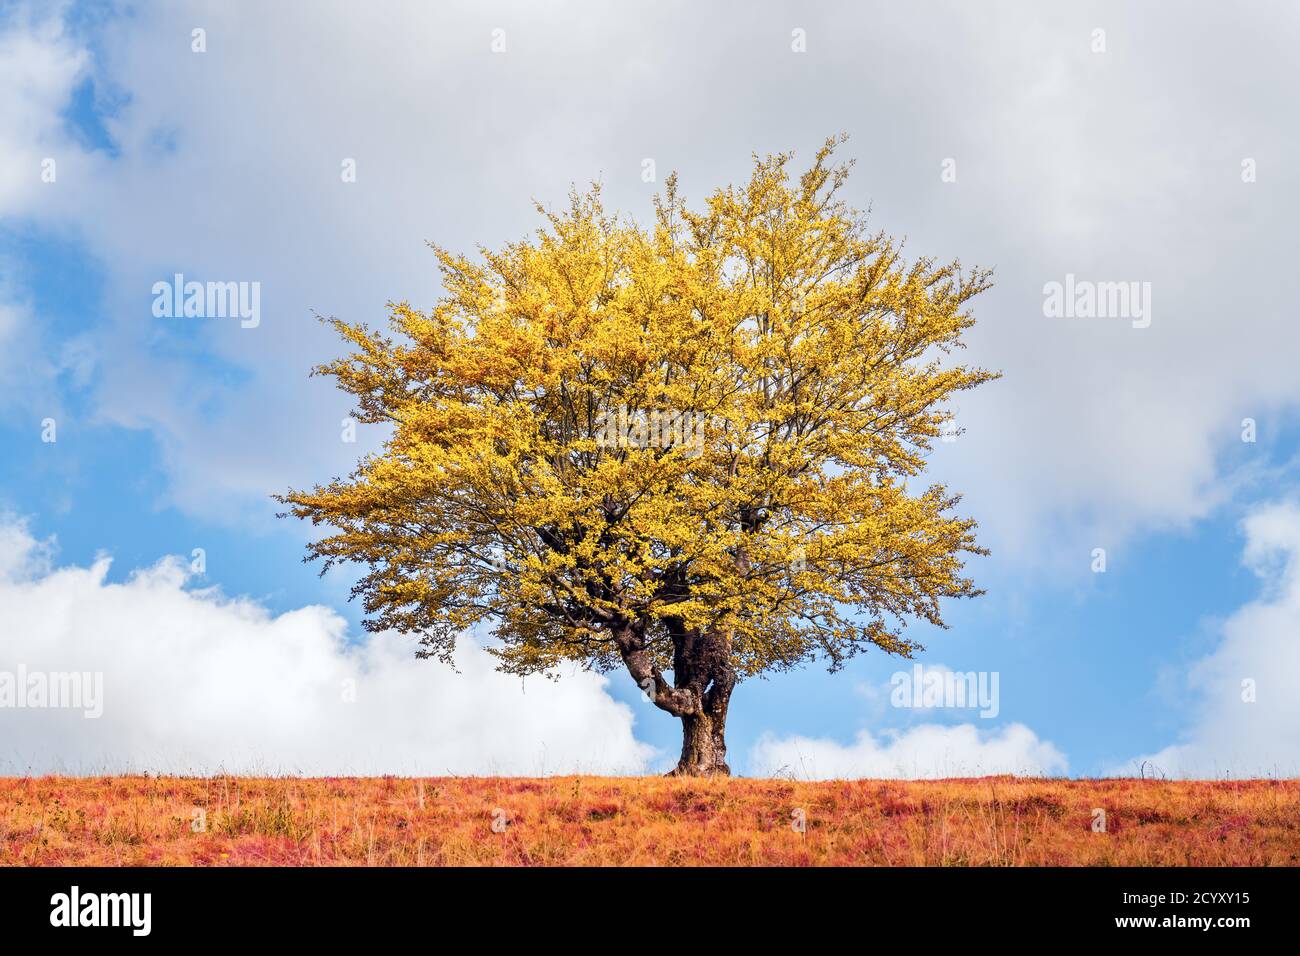 Maestoso albero con foglie gialle nella valle di montagna d'autunno. Scenografia colorata e suggestiva. Carpazi, Ucraina. Fotografia di paesaggio Foto Stock